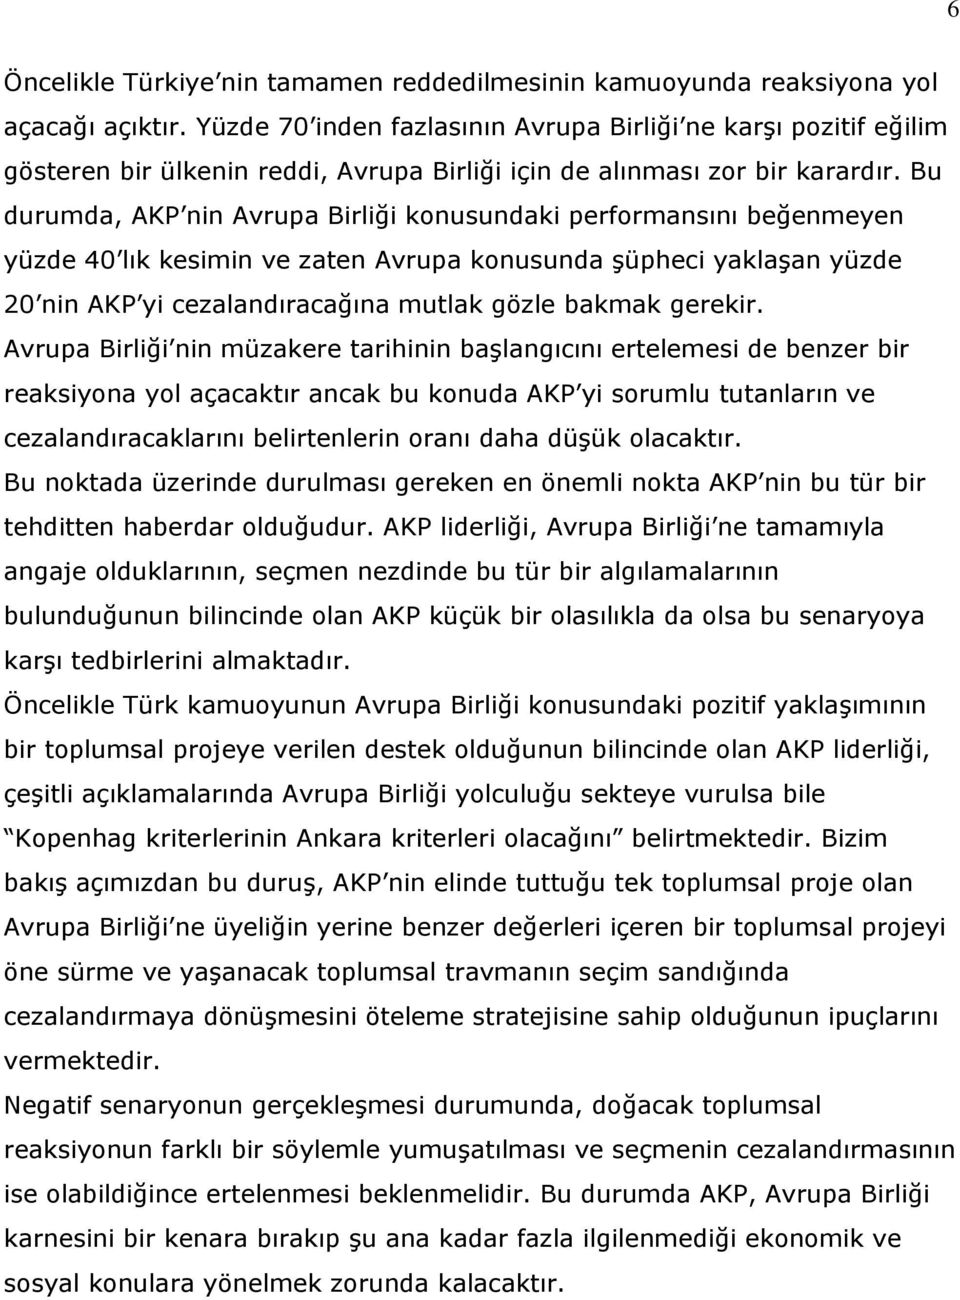 Bu durumda, AKP nin Avrupa Birliği konusundaki performansını beğenmeyen yüzde 40 lık kesimin ve zaten Avrupa konusunda şüpheci yaklaşan yüzde 20 nin AKP yi cezalandıracağına mutlak gözle bakmak